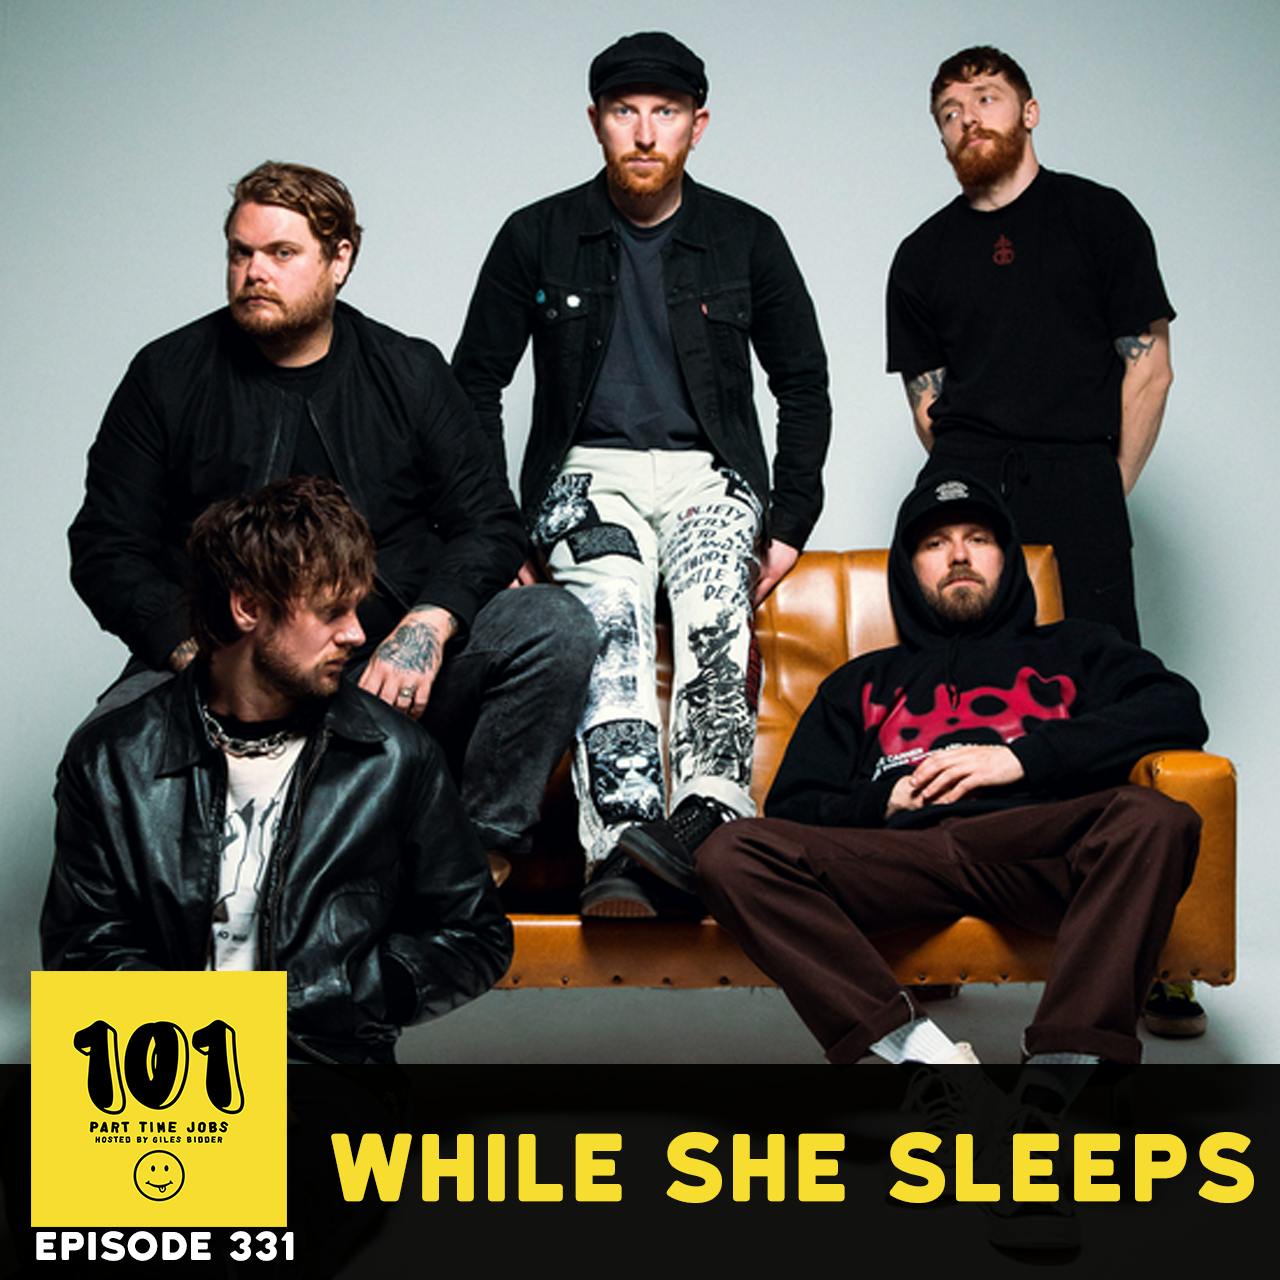 While She Sleeps - "DIY arena band"